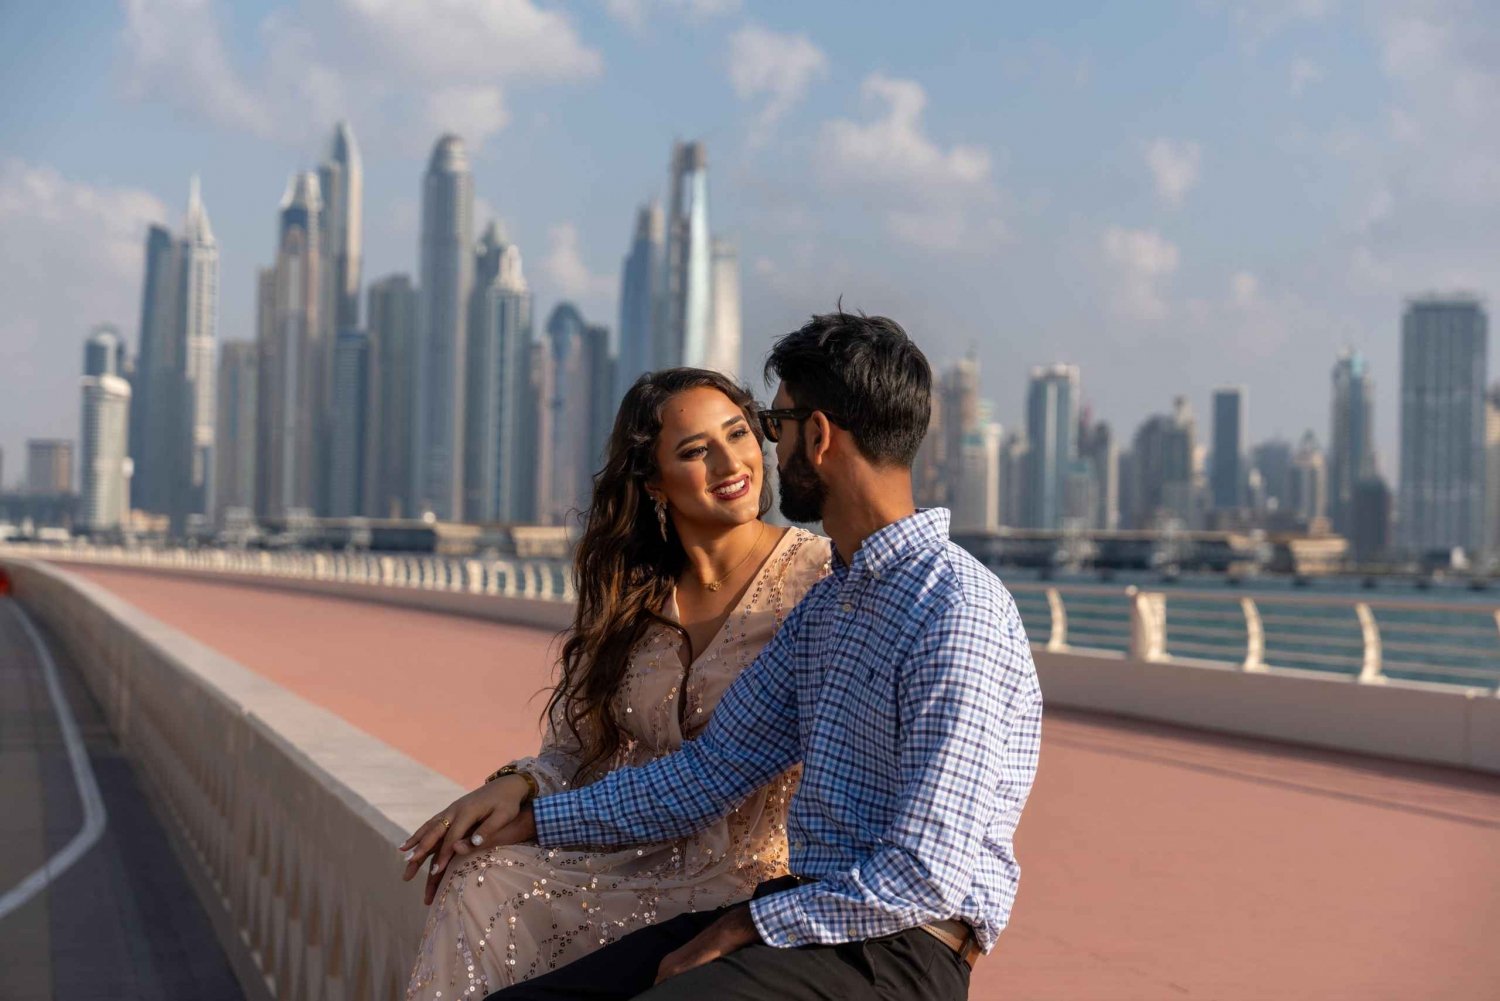 Dubai: Yksityinen valokuvaus, jossa on nouto ja kyyditys hotellista.